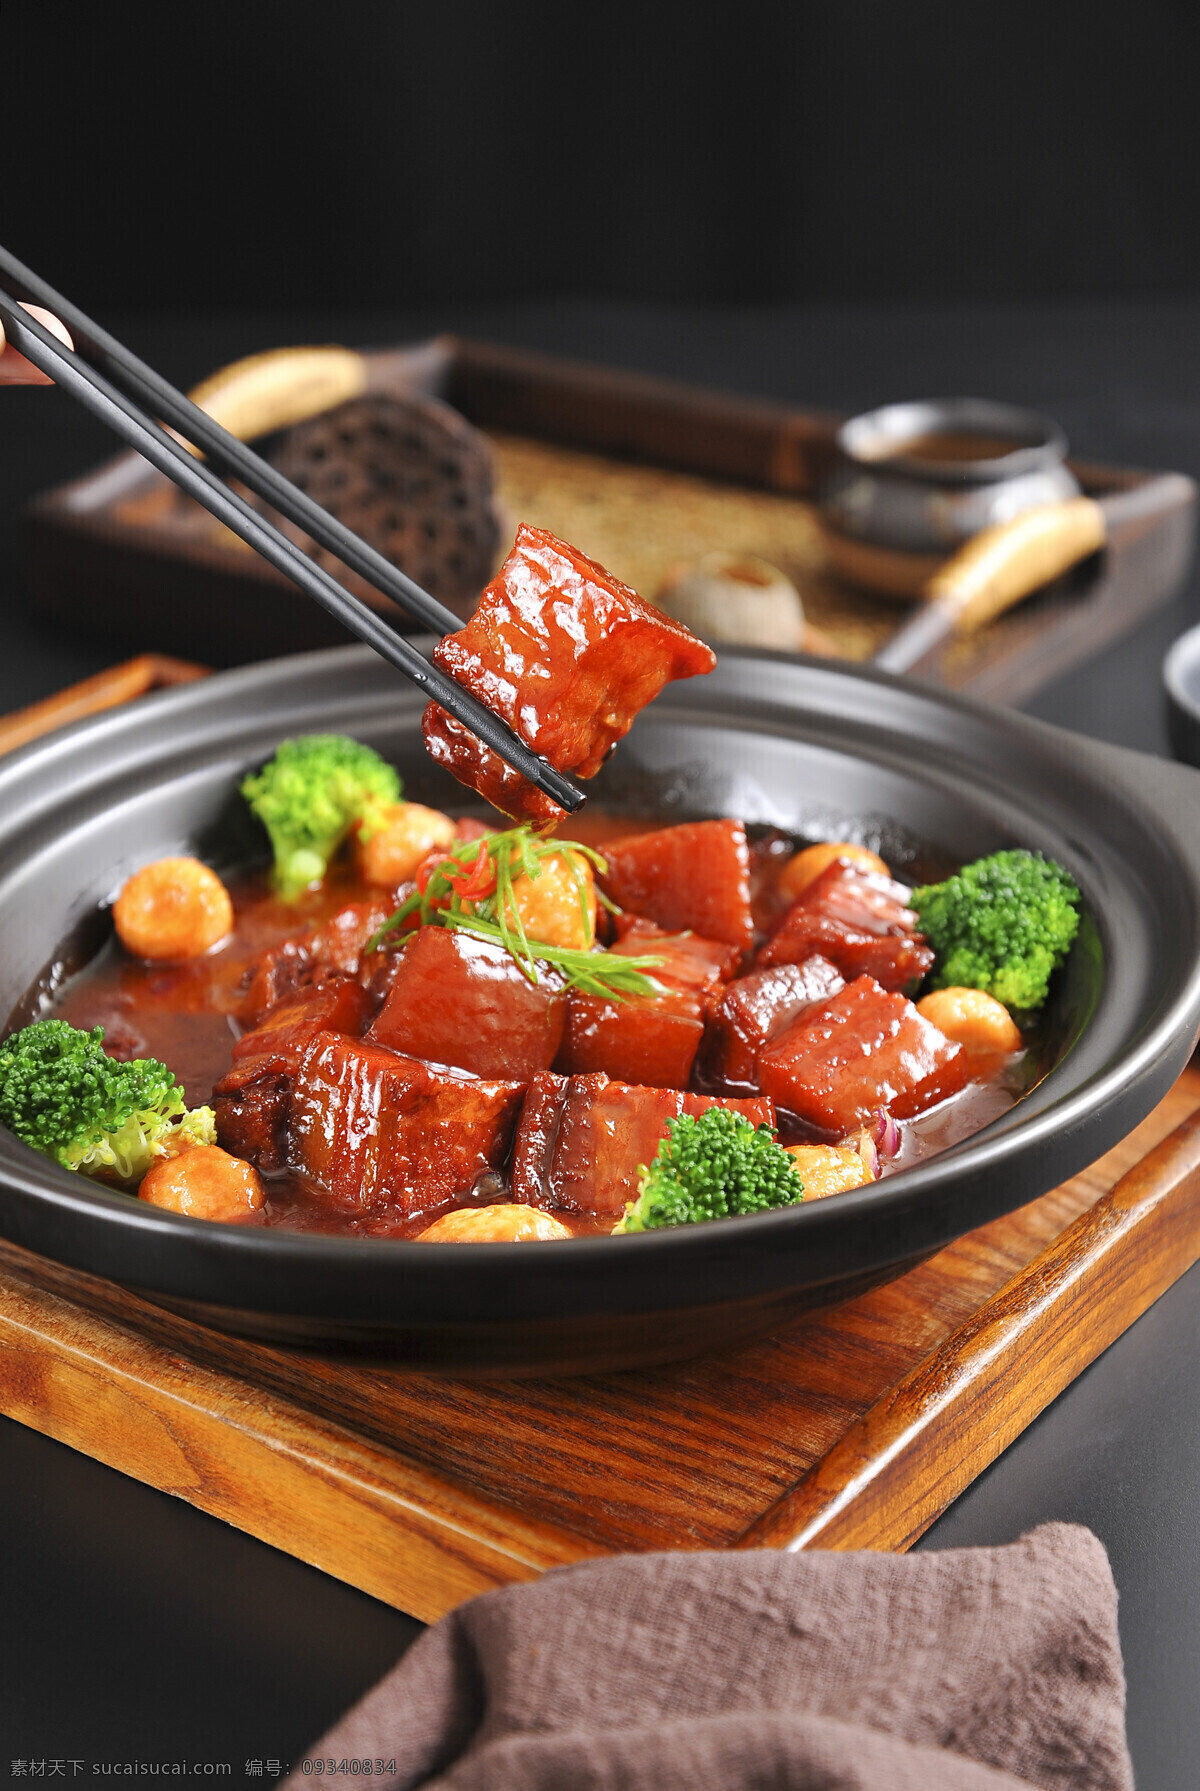 红烧肉 美食 食 材 背景 海报 素材图片 食材 食物 中药 水果 类 餐饮美食